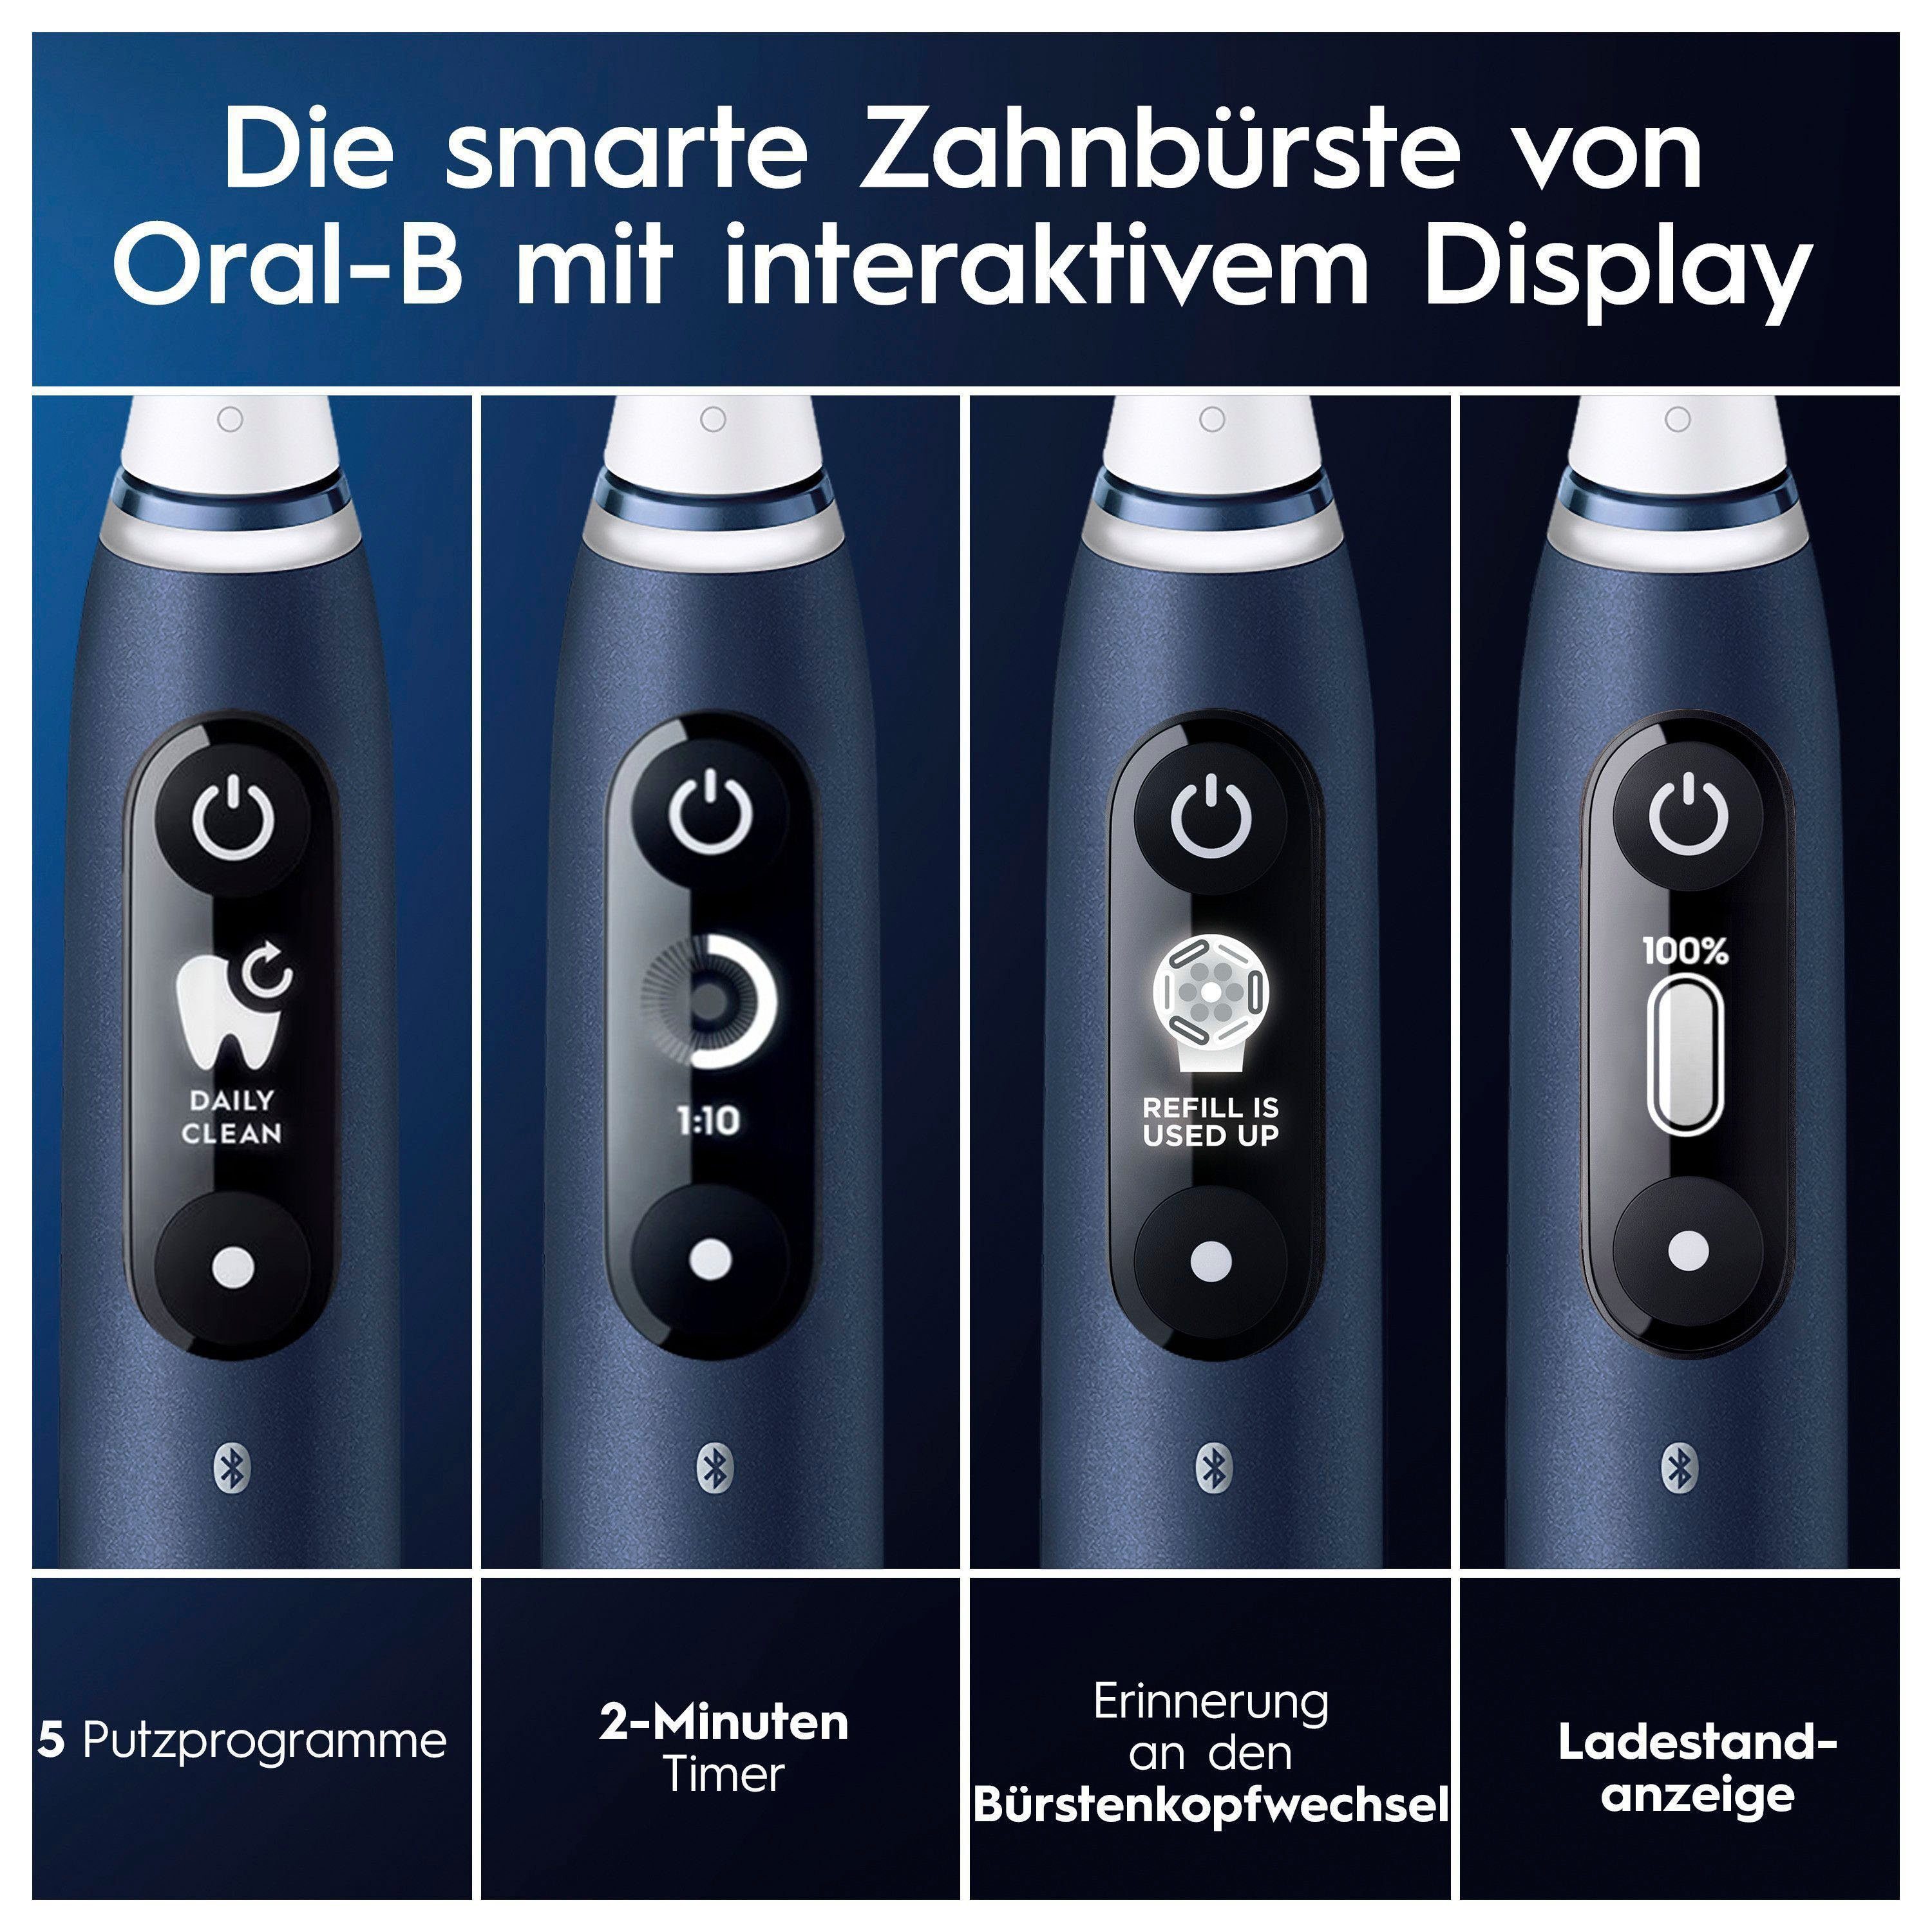 Braun Oral-B Reiseetui 2 mit Aufsteckbürsten: St., blue 7, Elektrische sapphire Putzmodi, Zahnbürste iO Magnet-Technologie, Display, 5